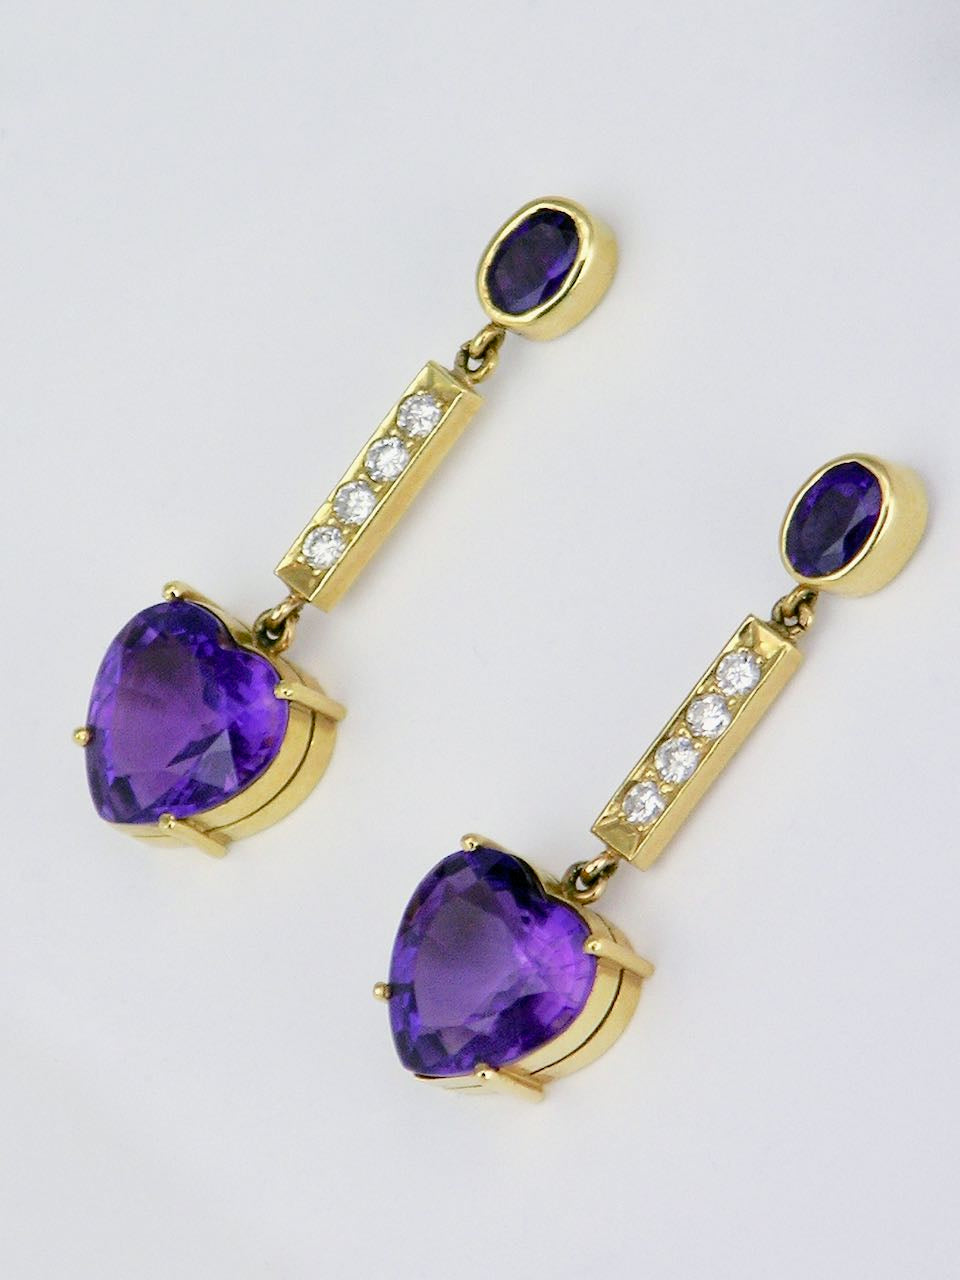 Vintage 18k Yellow Gold Purple Amethyst Heart and Diamond Drop Earrings